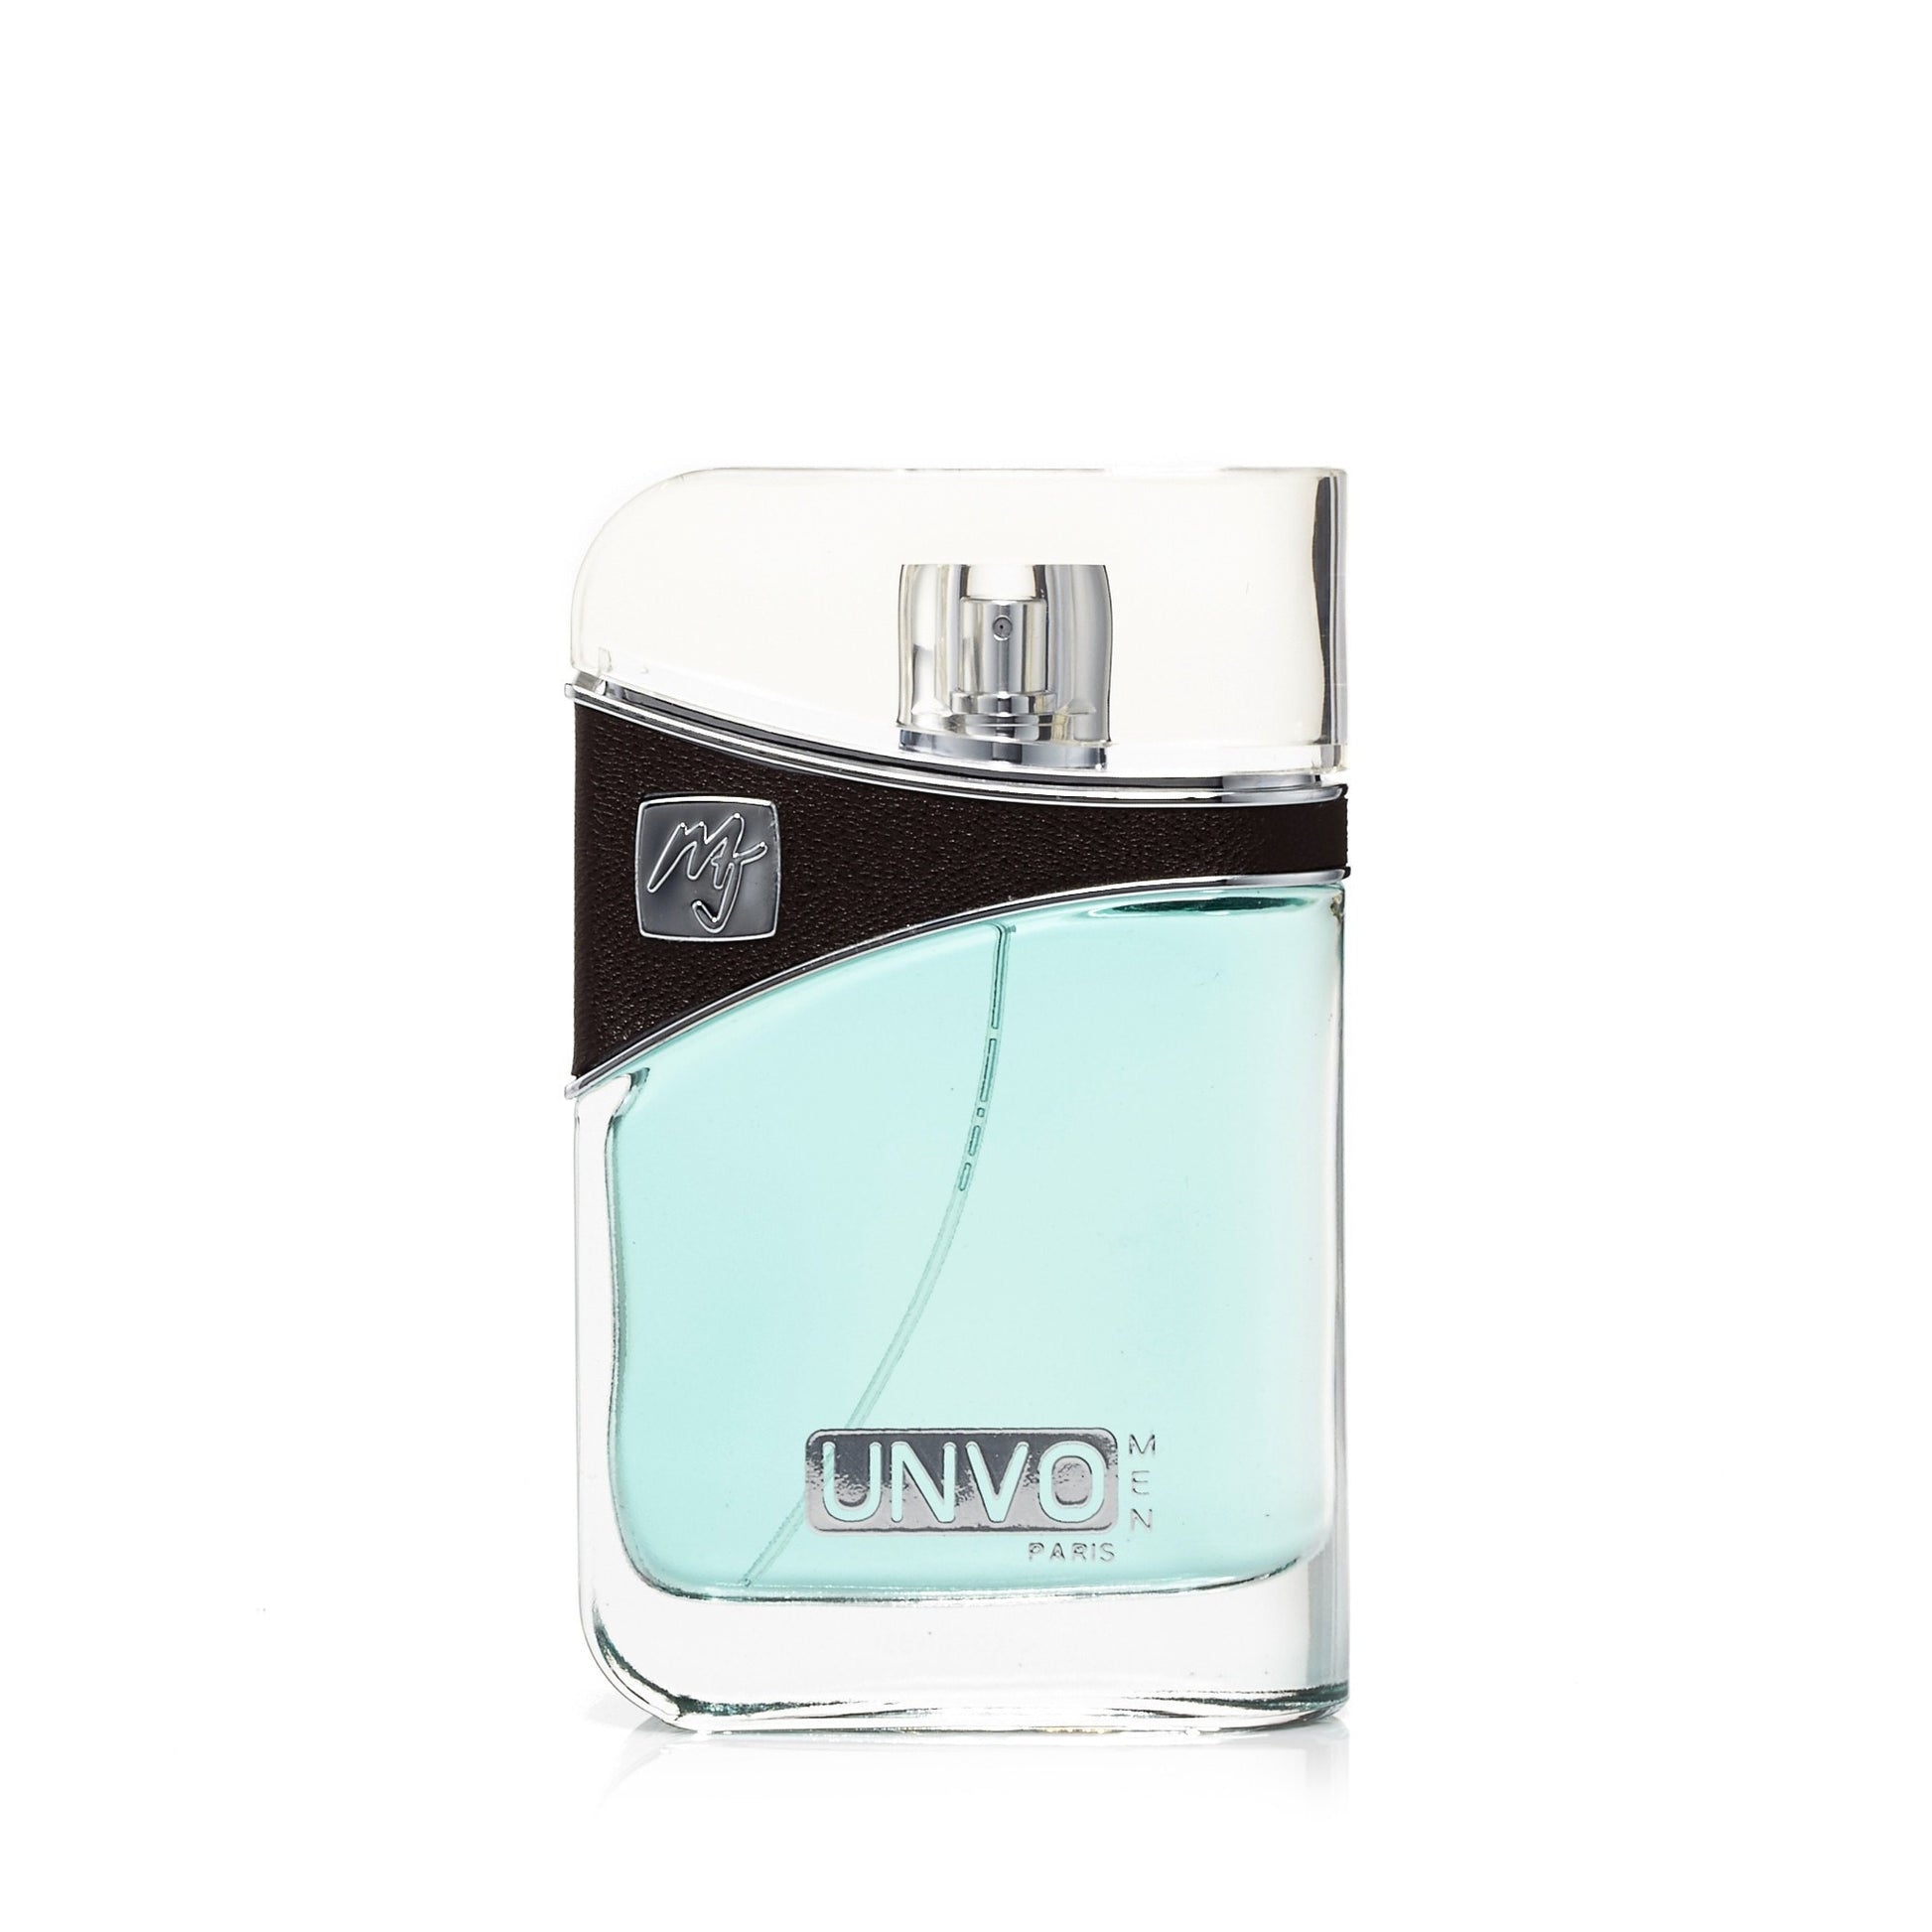 Unvo Eau de Parfum Mens Spray 3.3 oz. Click to open in modal